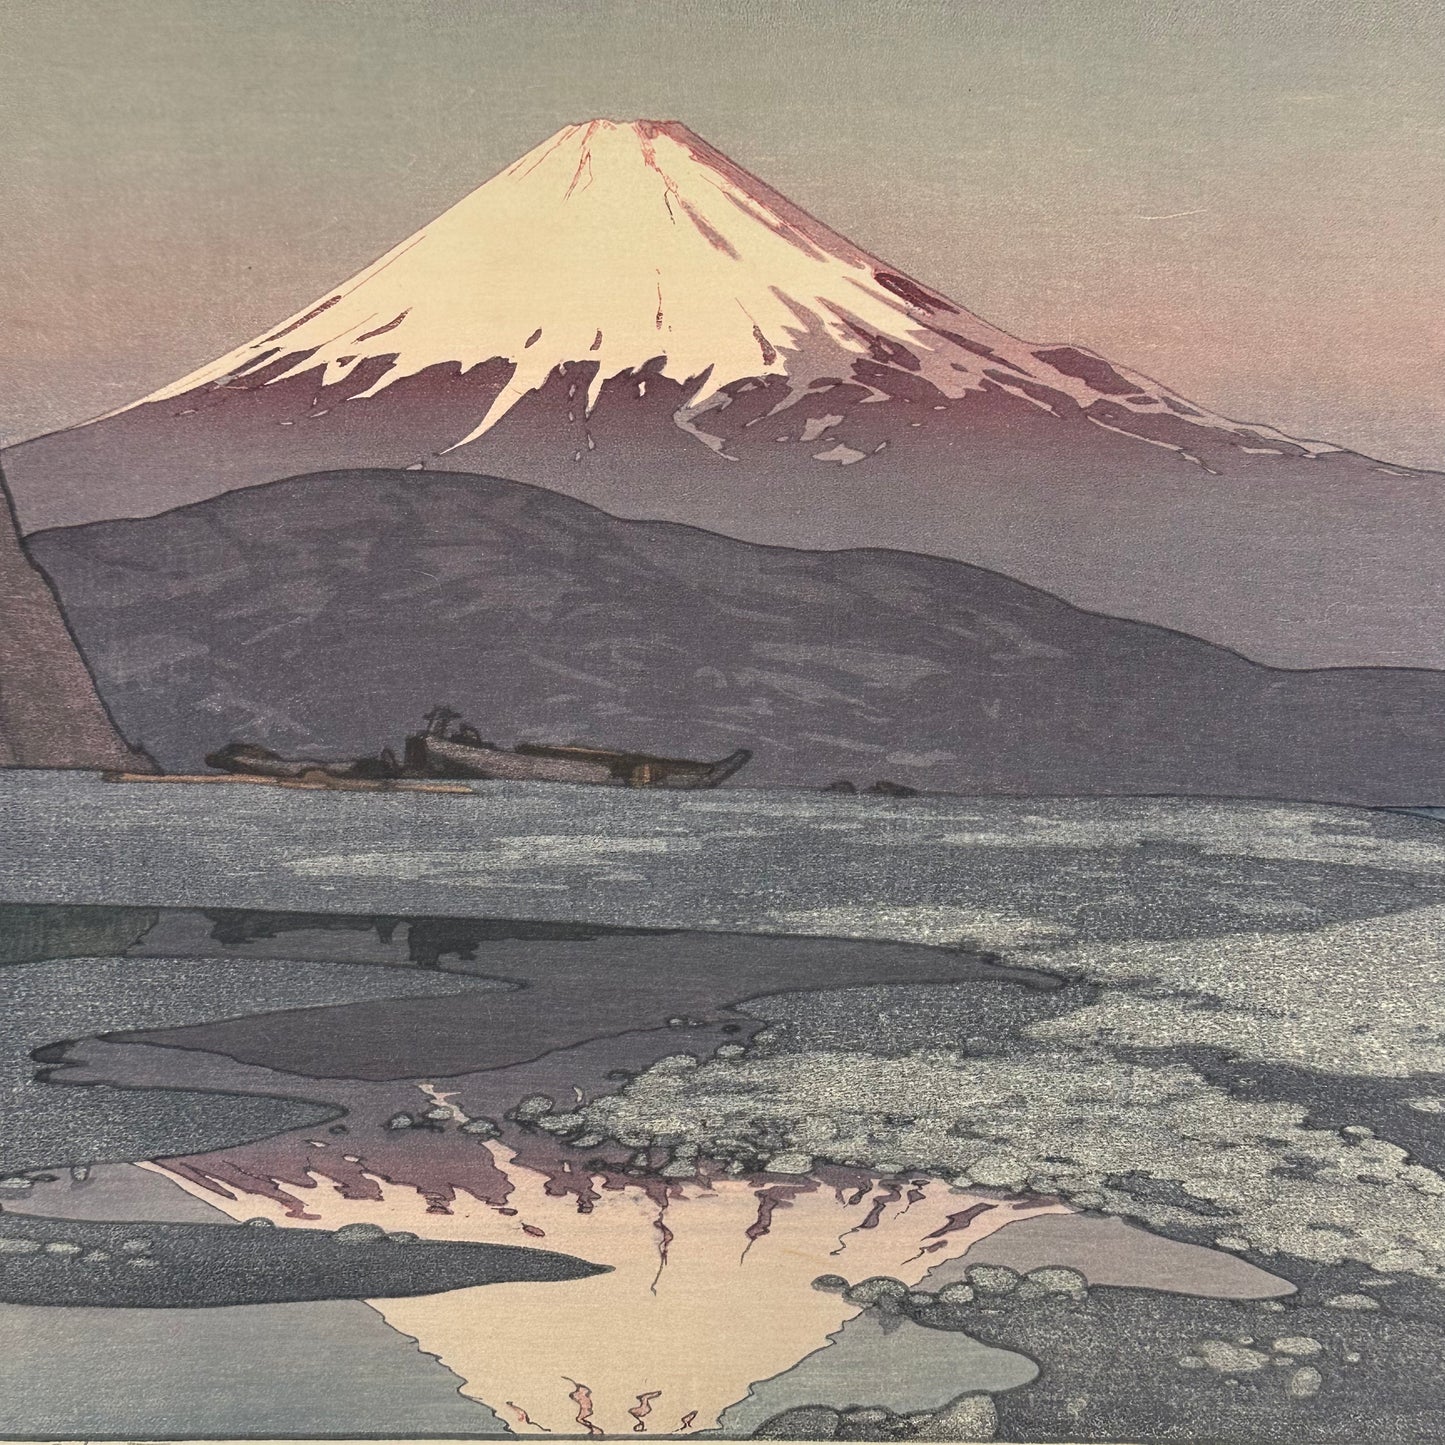 "Fuji Yama from Okitsu" Hiroshi Yoshida Woodblock Print 1928 Signed Original